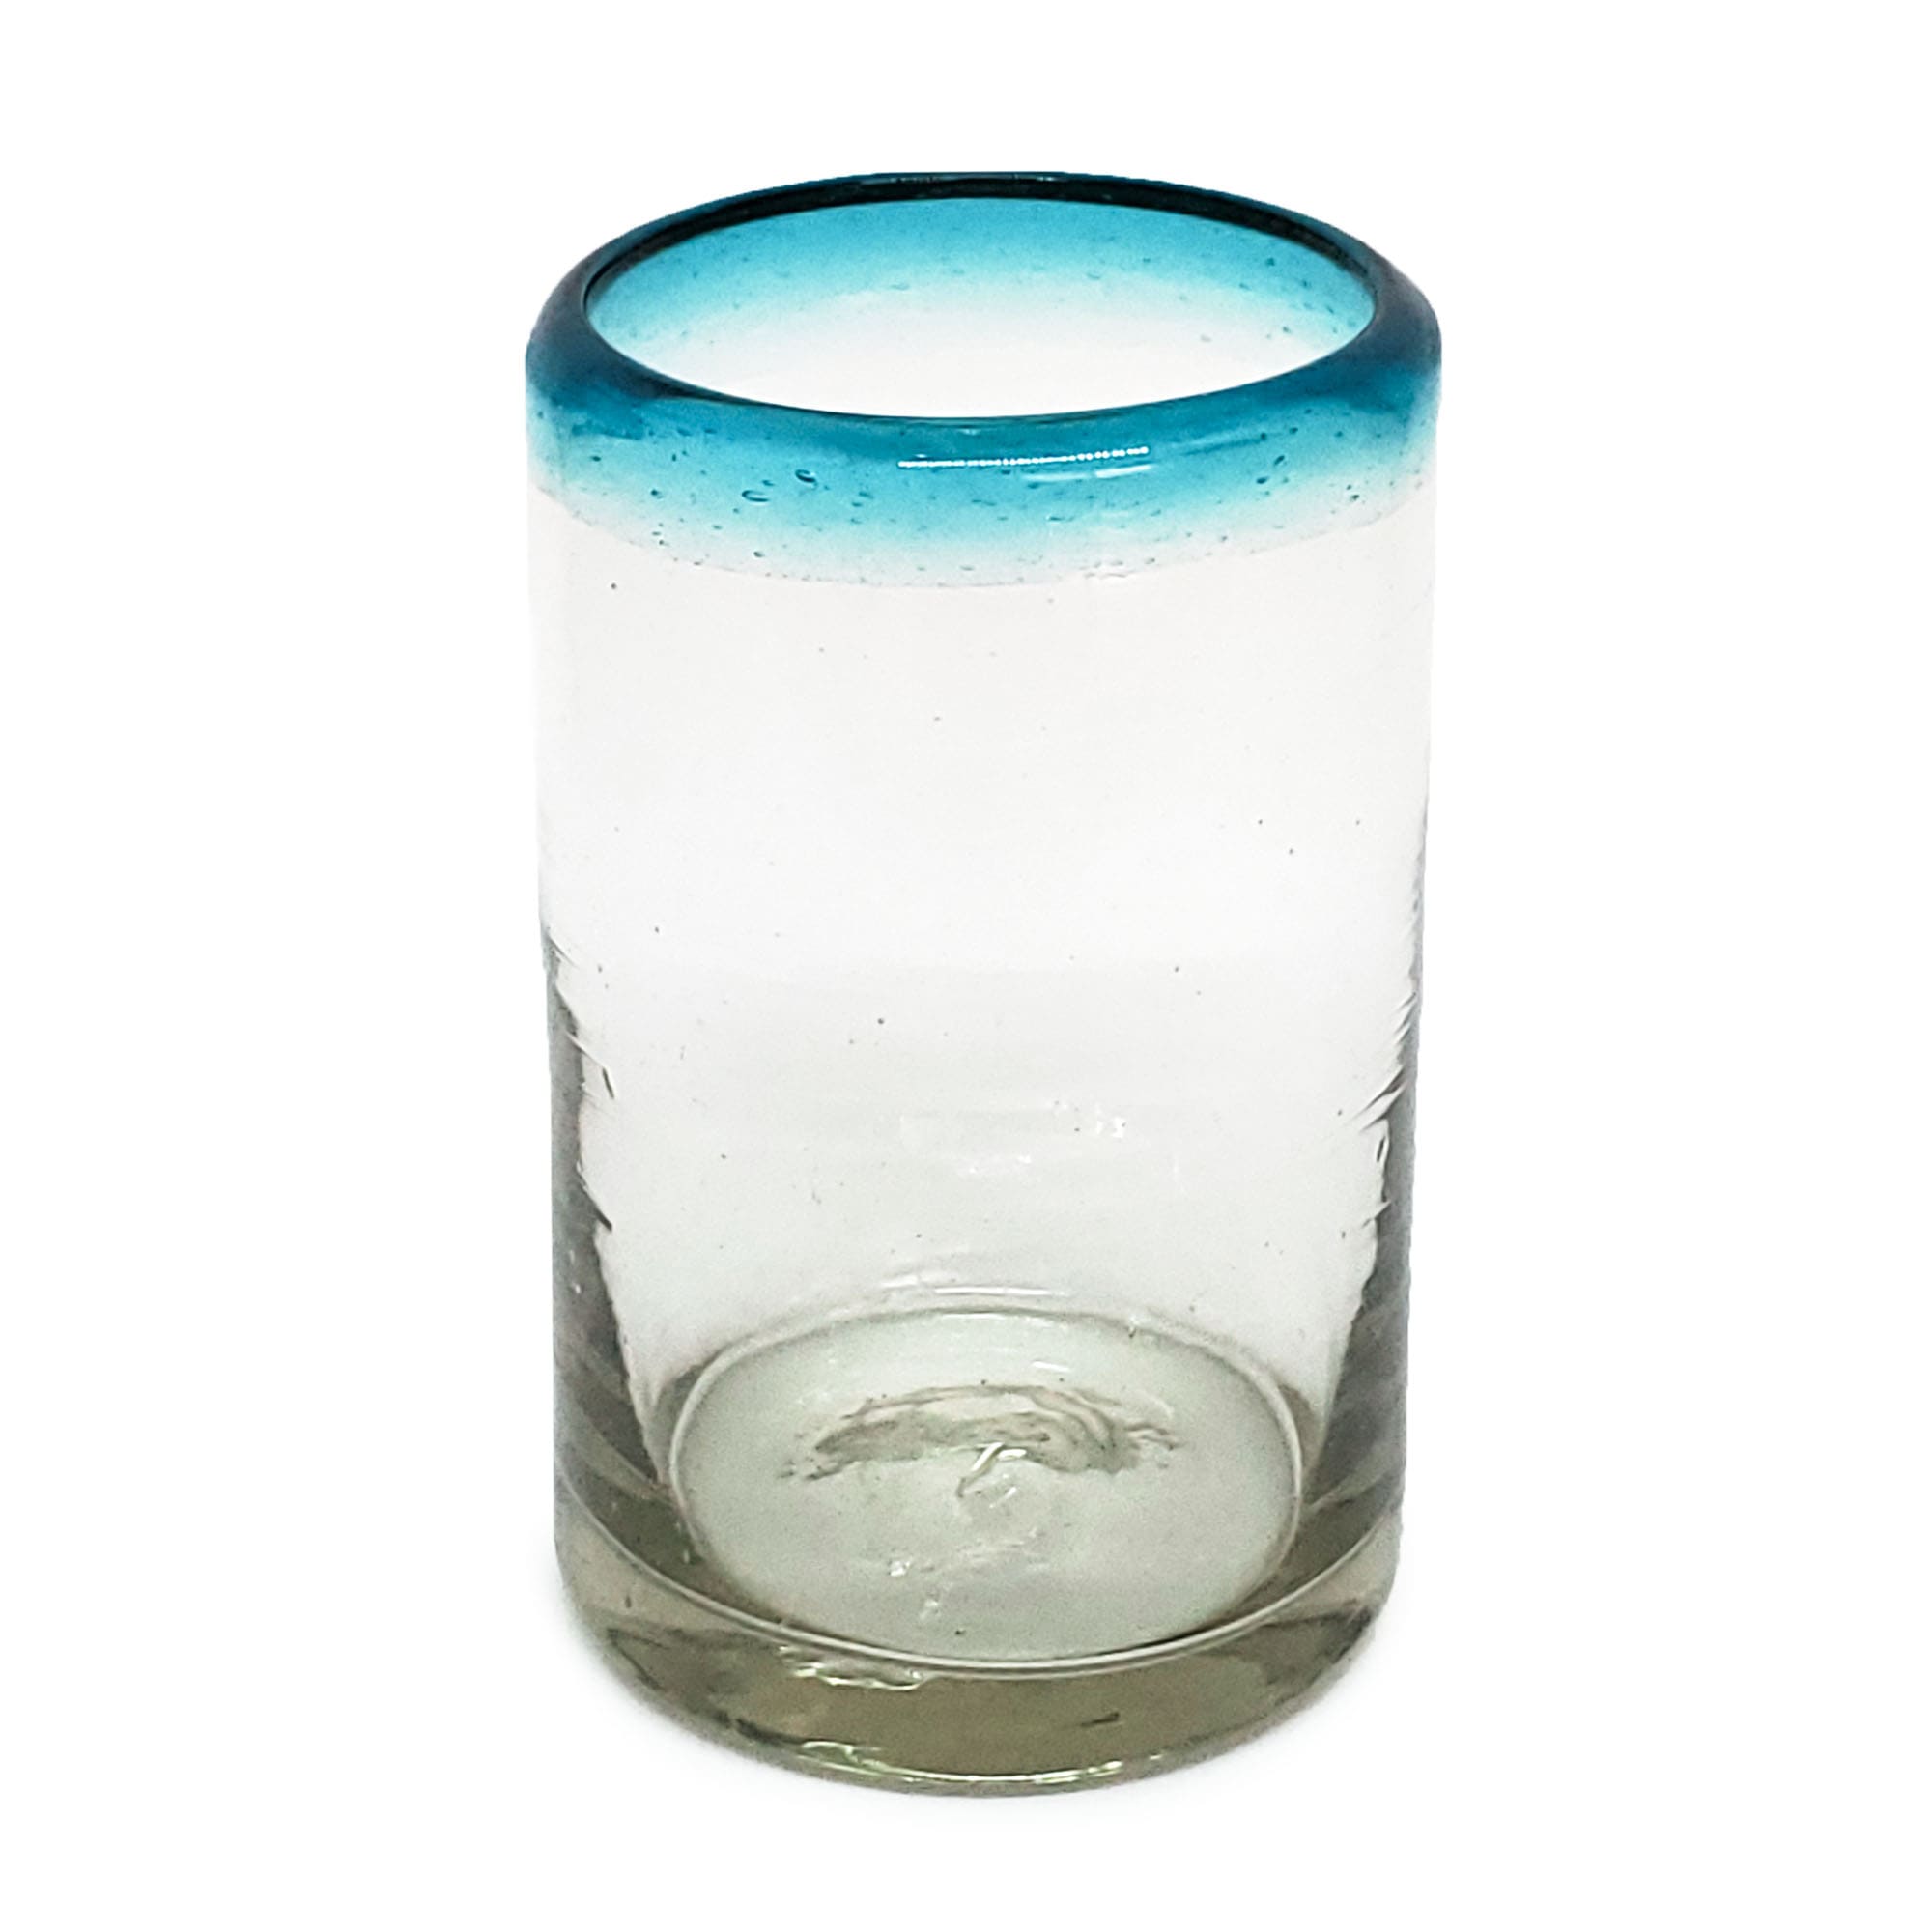 VIDRIO SOPLADO / vasos para jugo con borde azul aqua, 9 oz, Vidrio Reciclado, Libre de Plomo y Toxinas